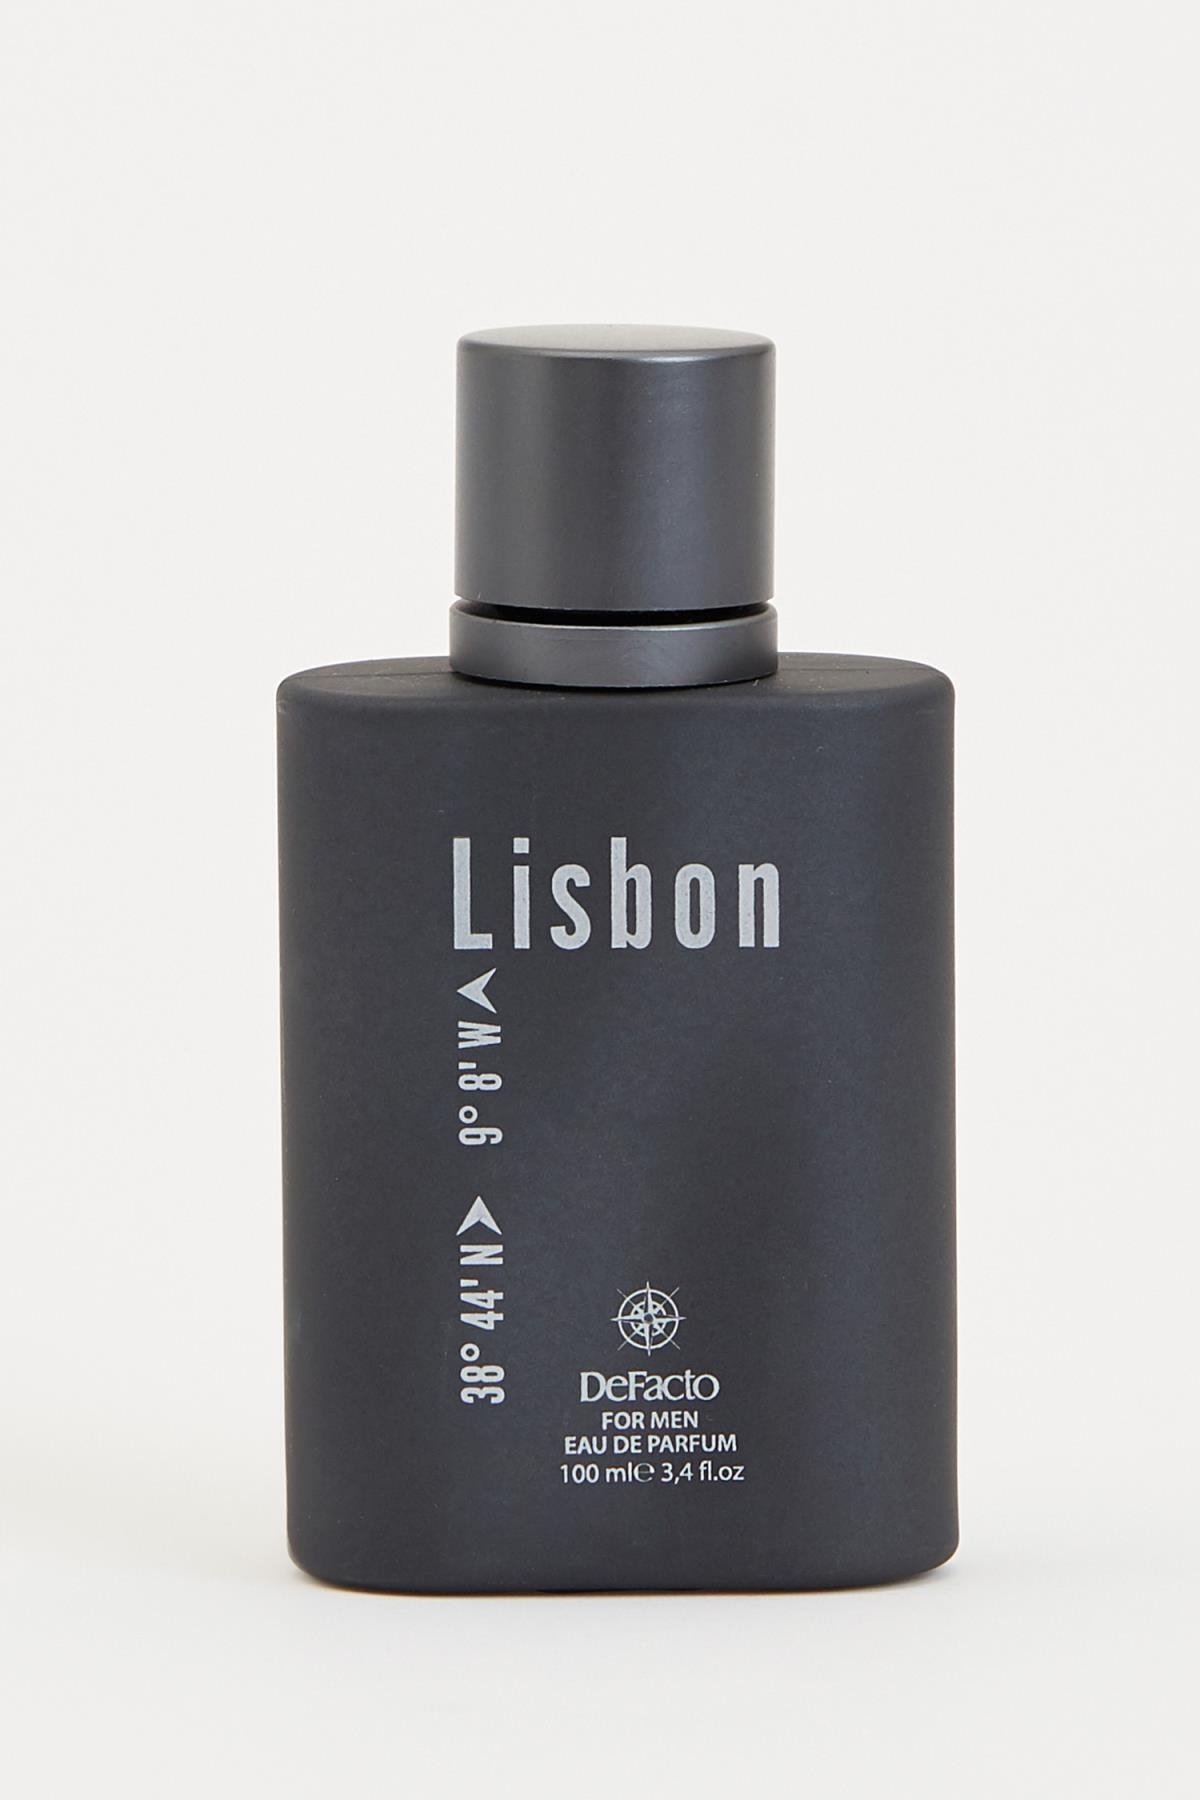 عطر مردانه دیفکتو لیزبون 100 میل Lisbon Defacto